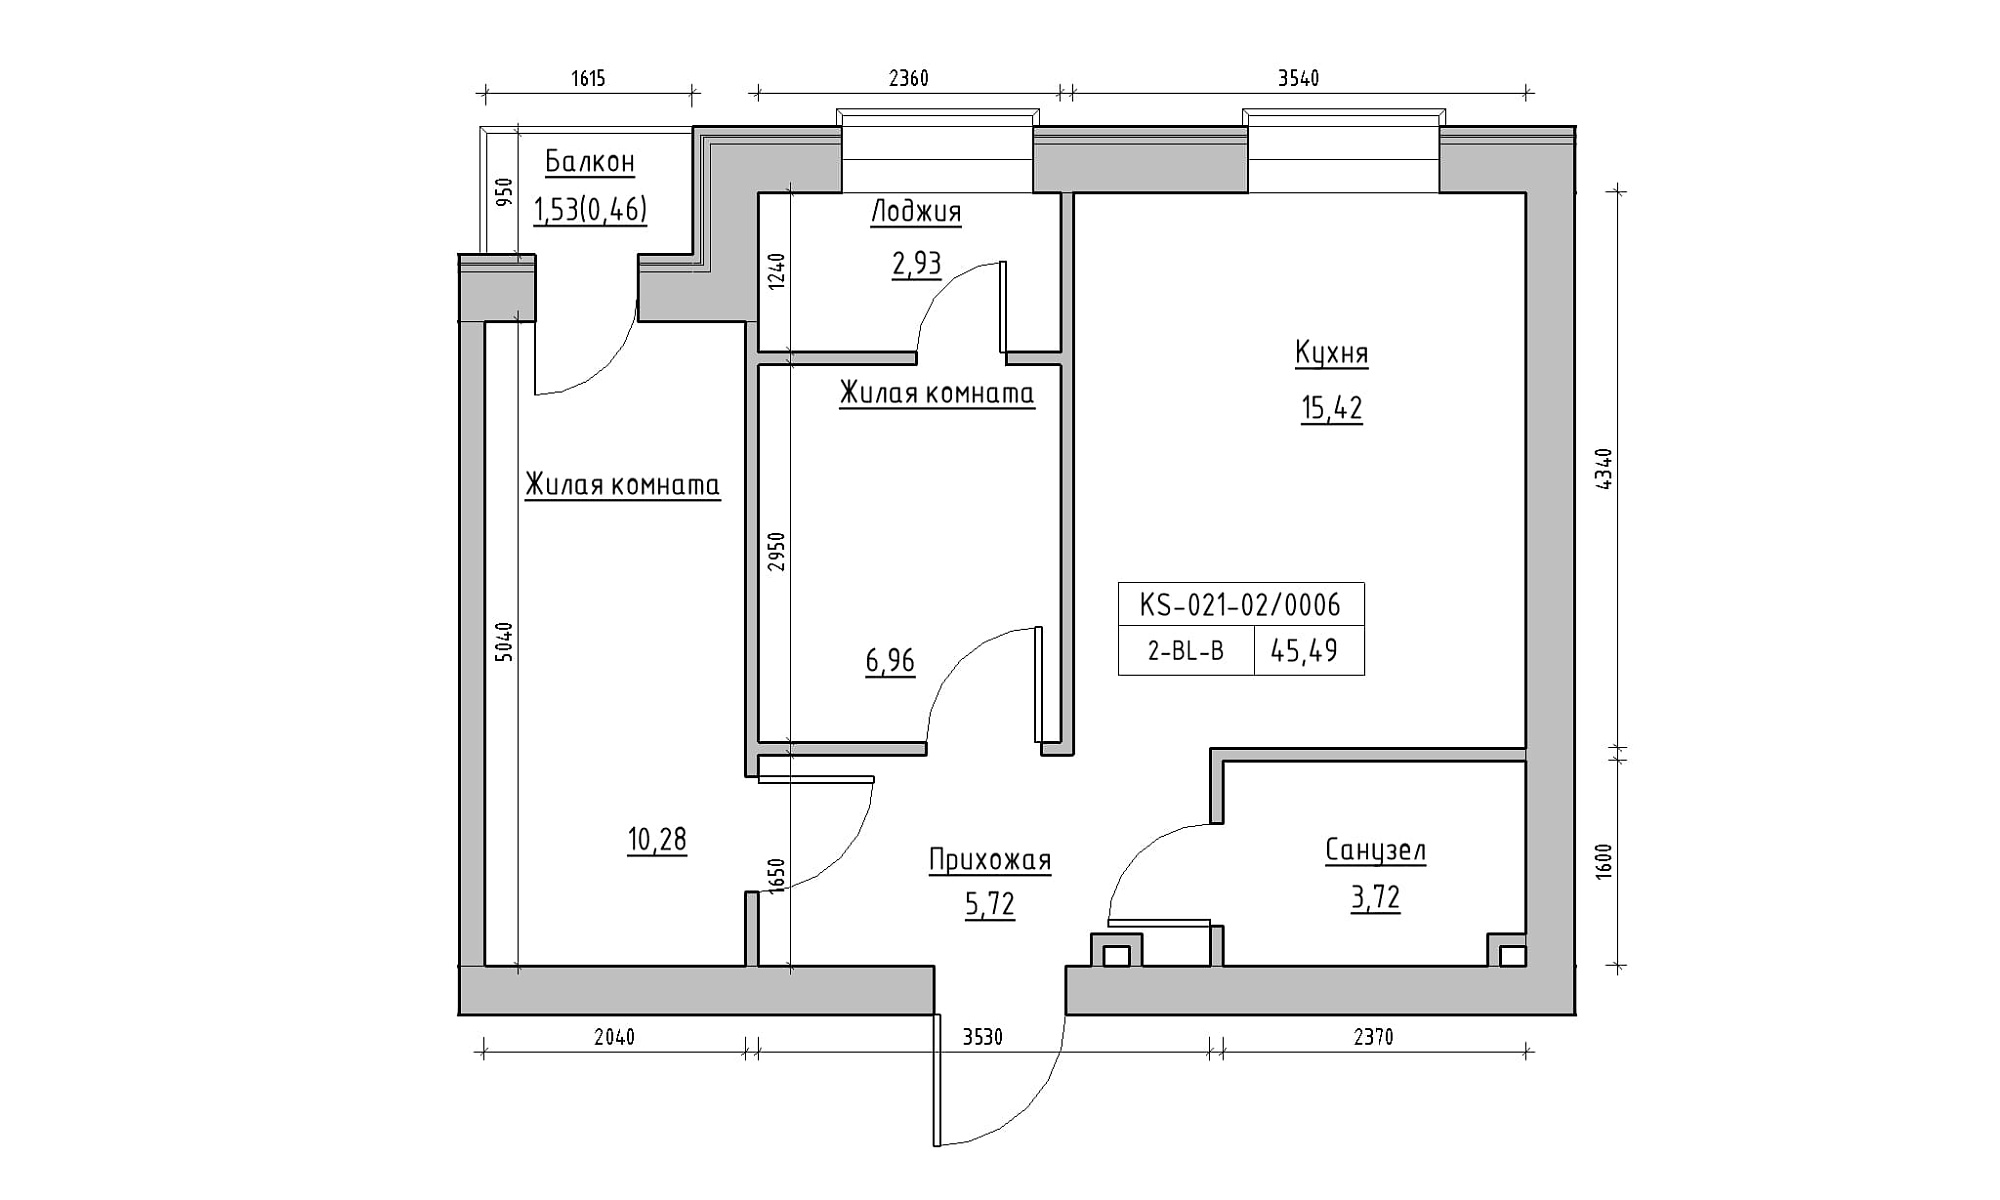 Планування 2-к квартира площею 45.49м2, KS-021-02/0006.